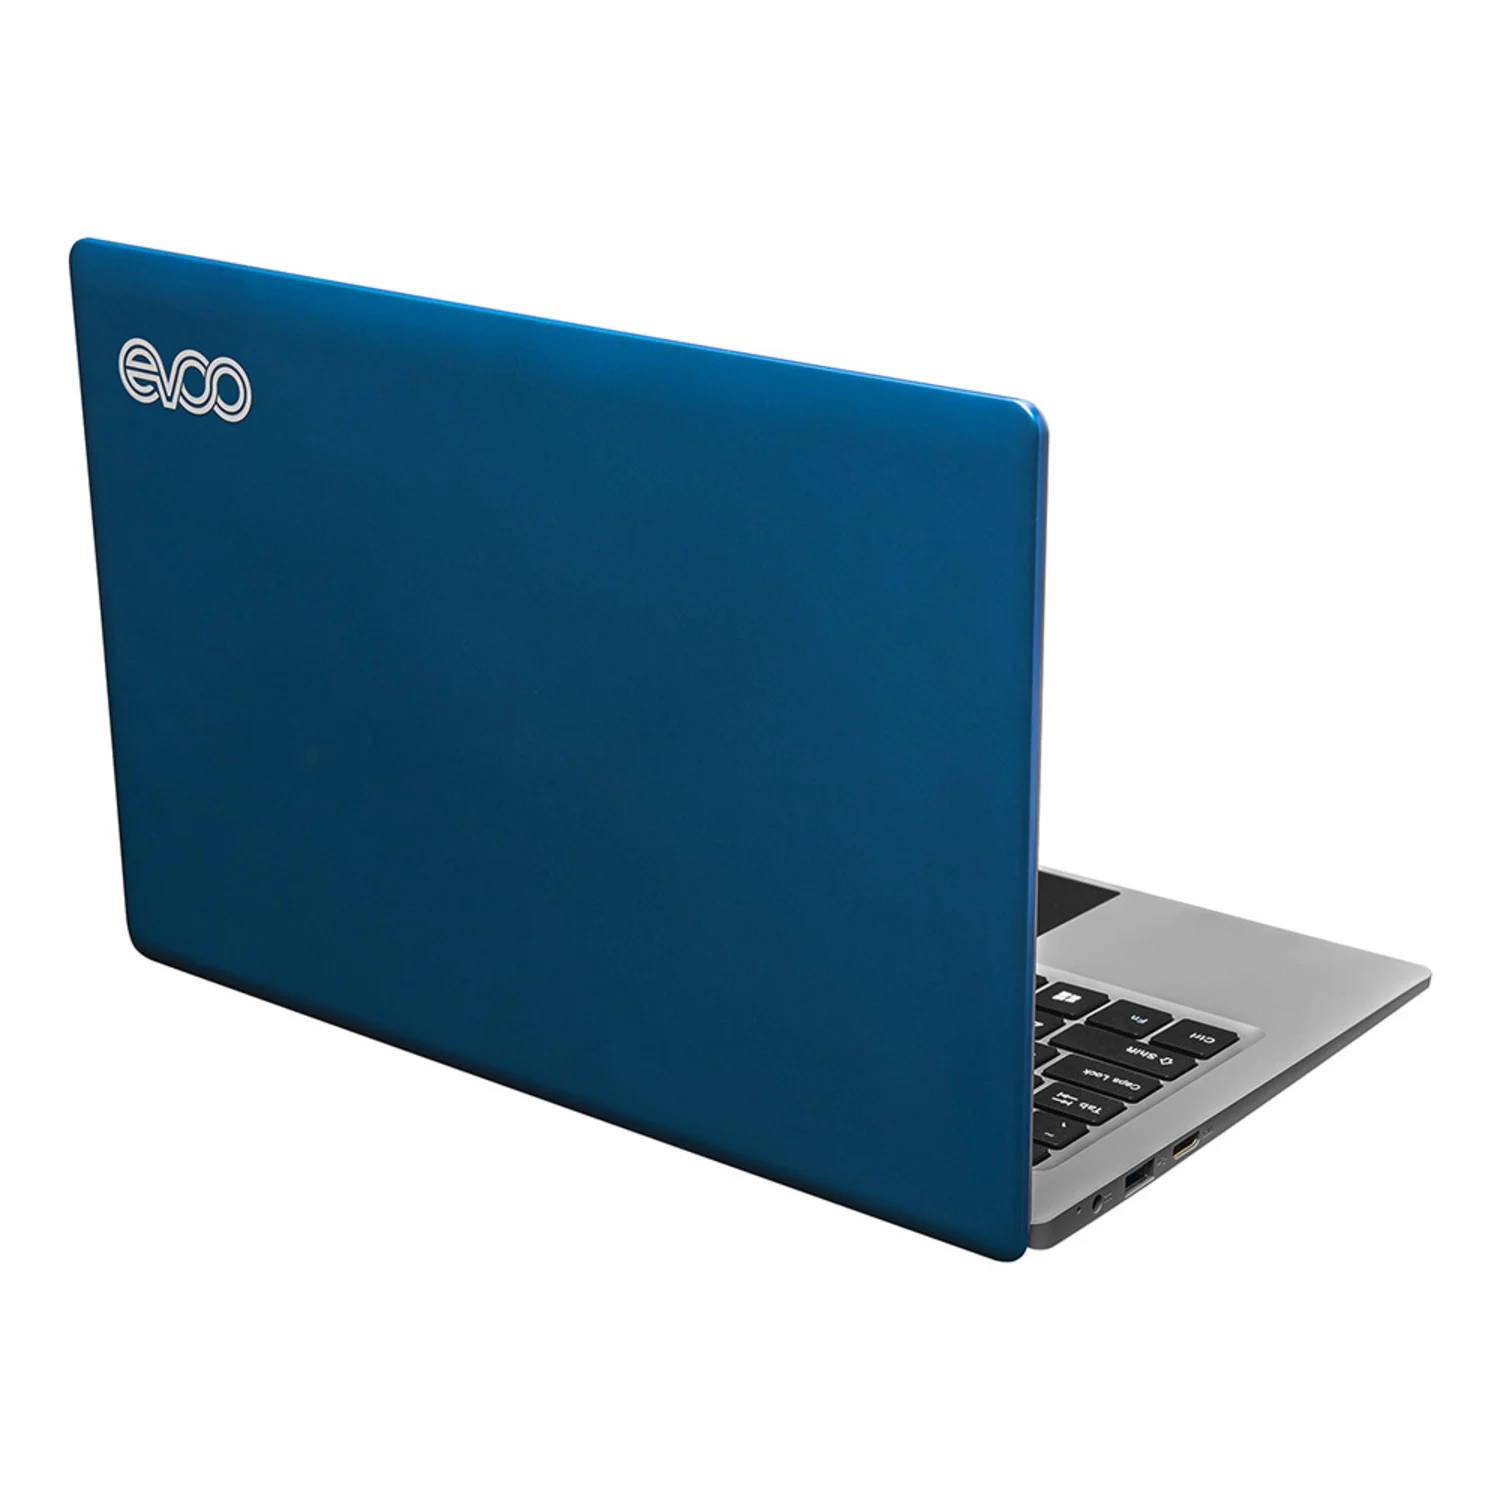 Notebook EVC-115-7BL / Intel celeron N4000 / 64GB SSD / 4GB RAM / Tela 11.6" - Azul